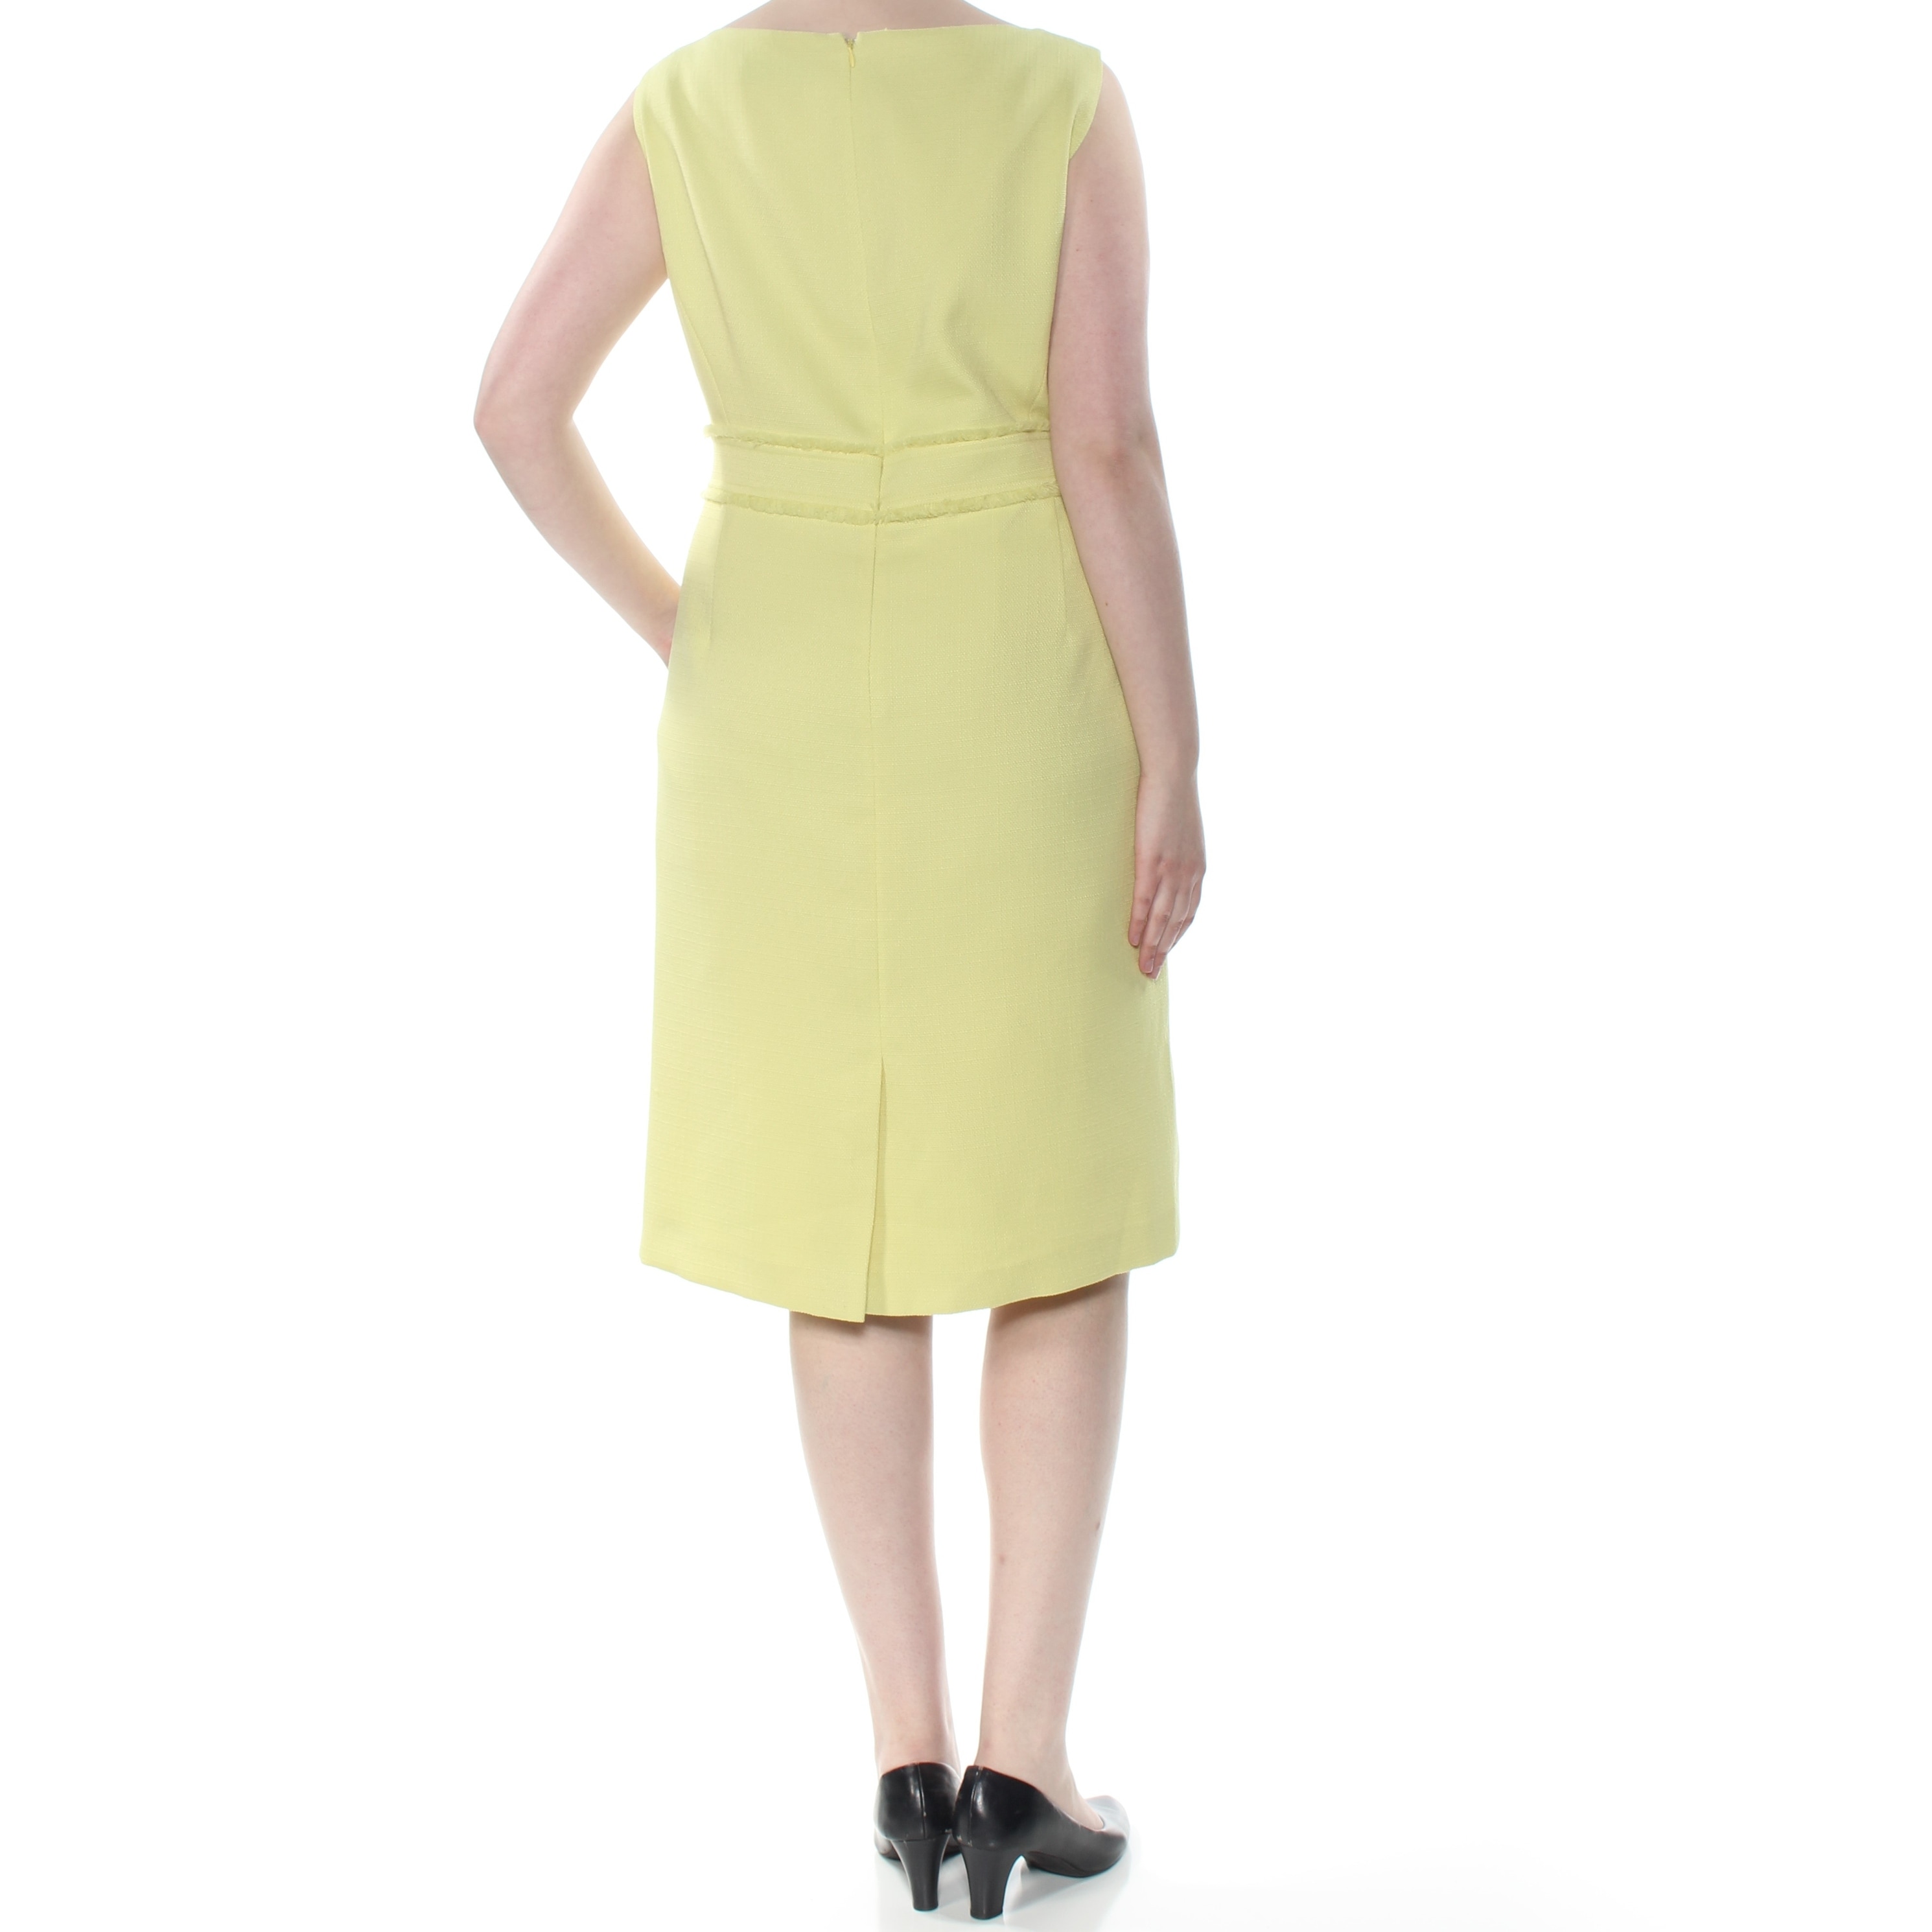 yellow dress size 22